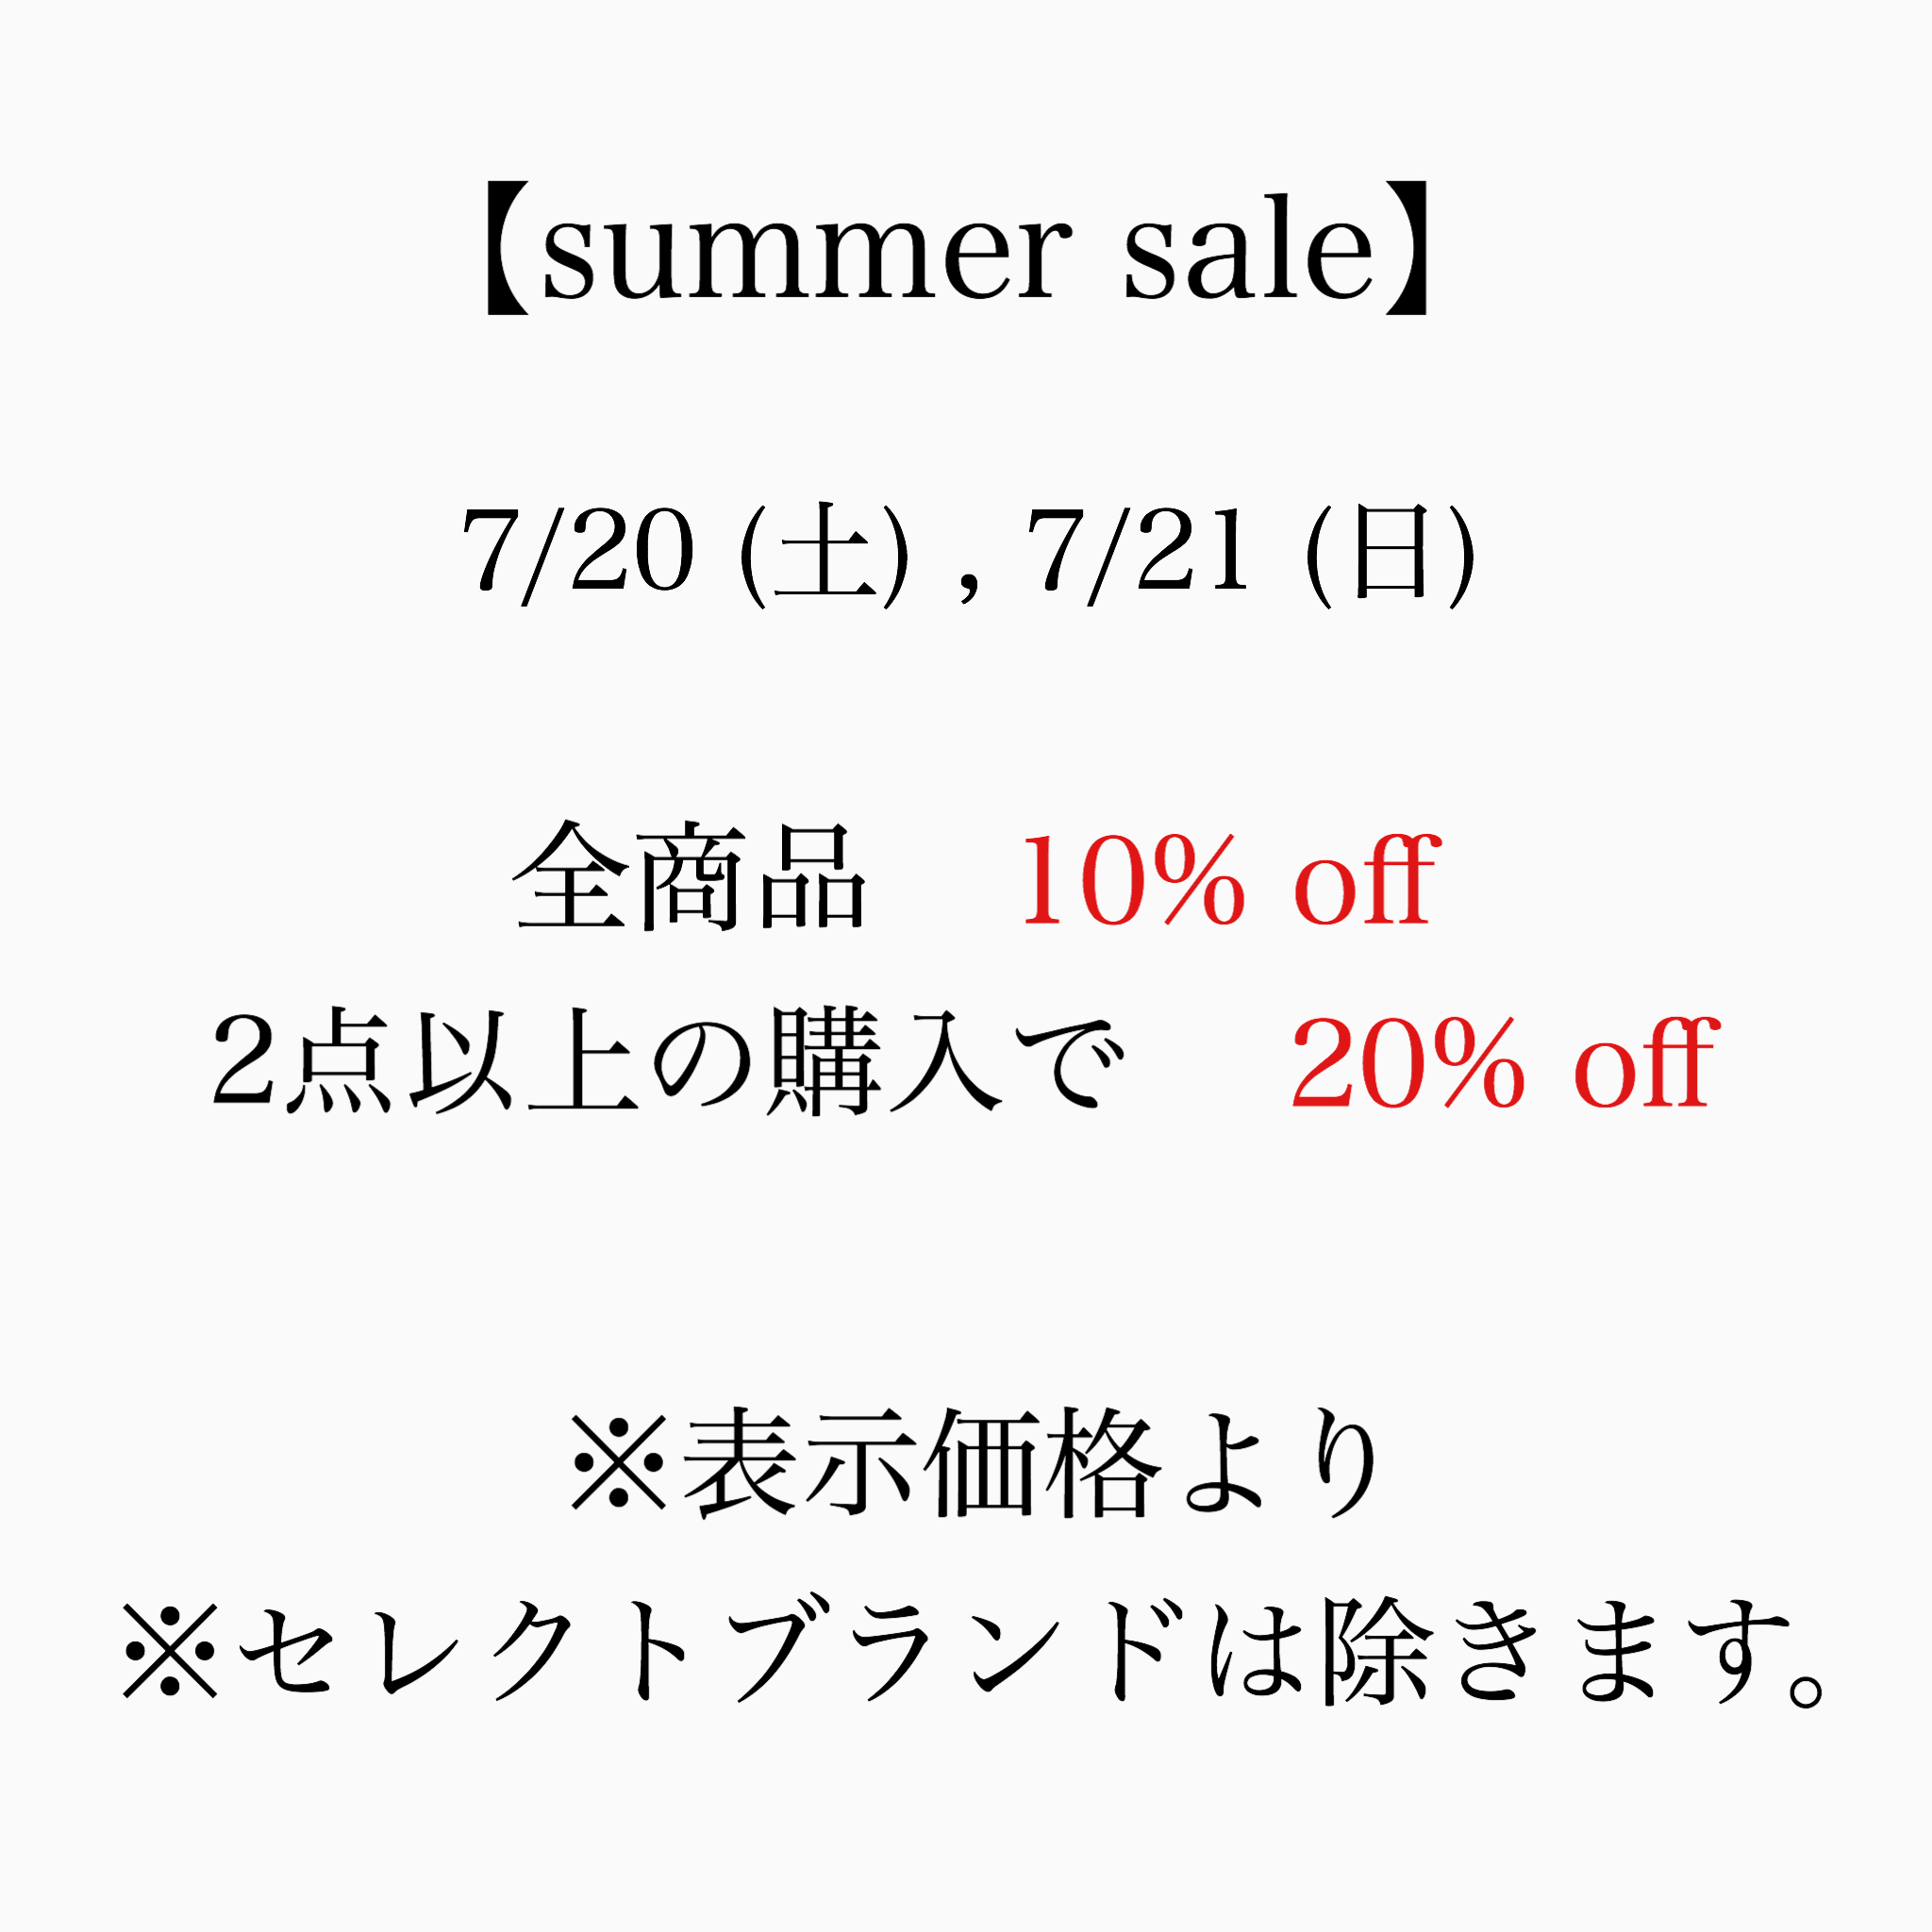 7/20 (土) , 7/21 (日) summer sale開催！